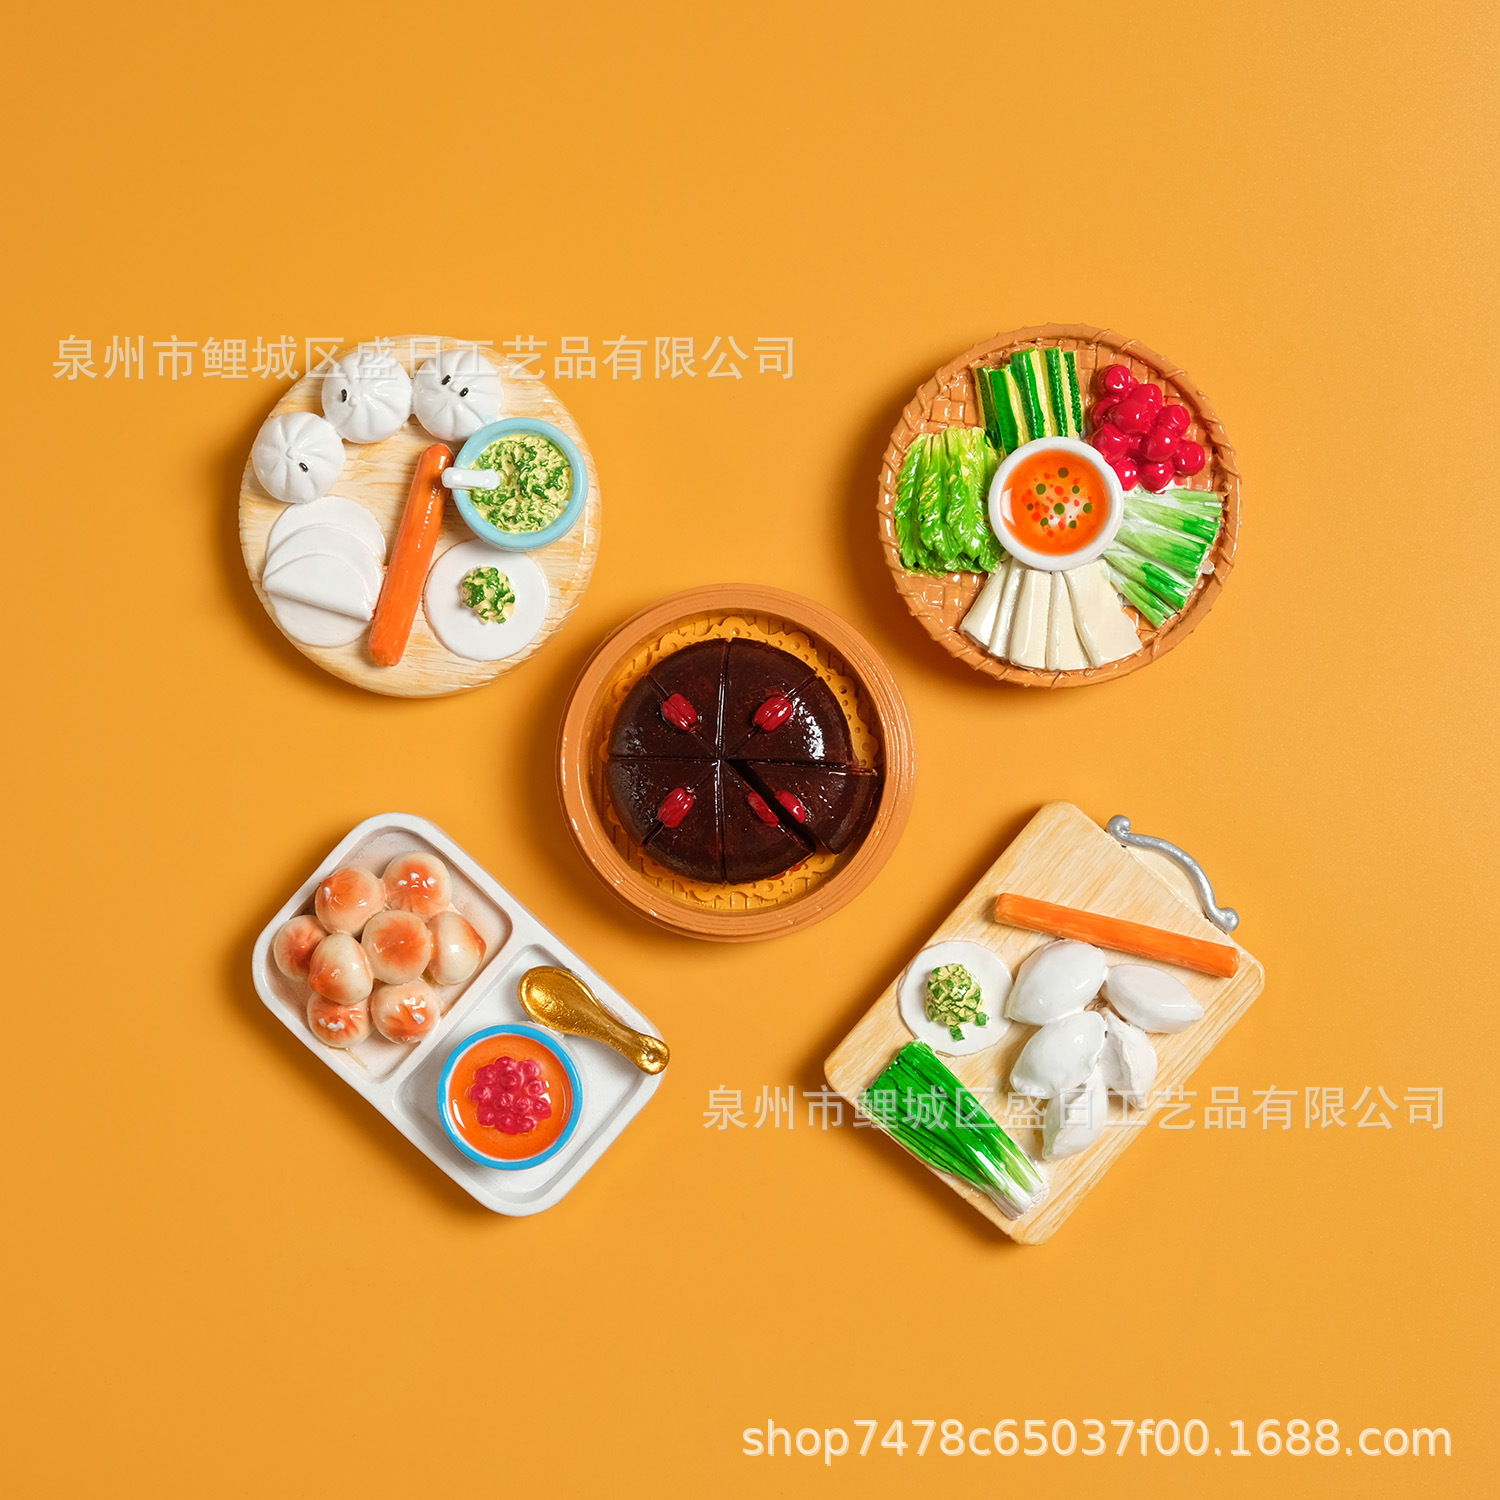 新款食玩包子饺子板树脂冰箱贴家居装饰贴礼品 旅游品 特色菜厂家